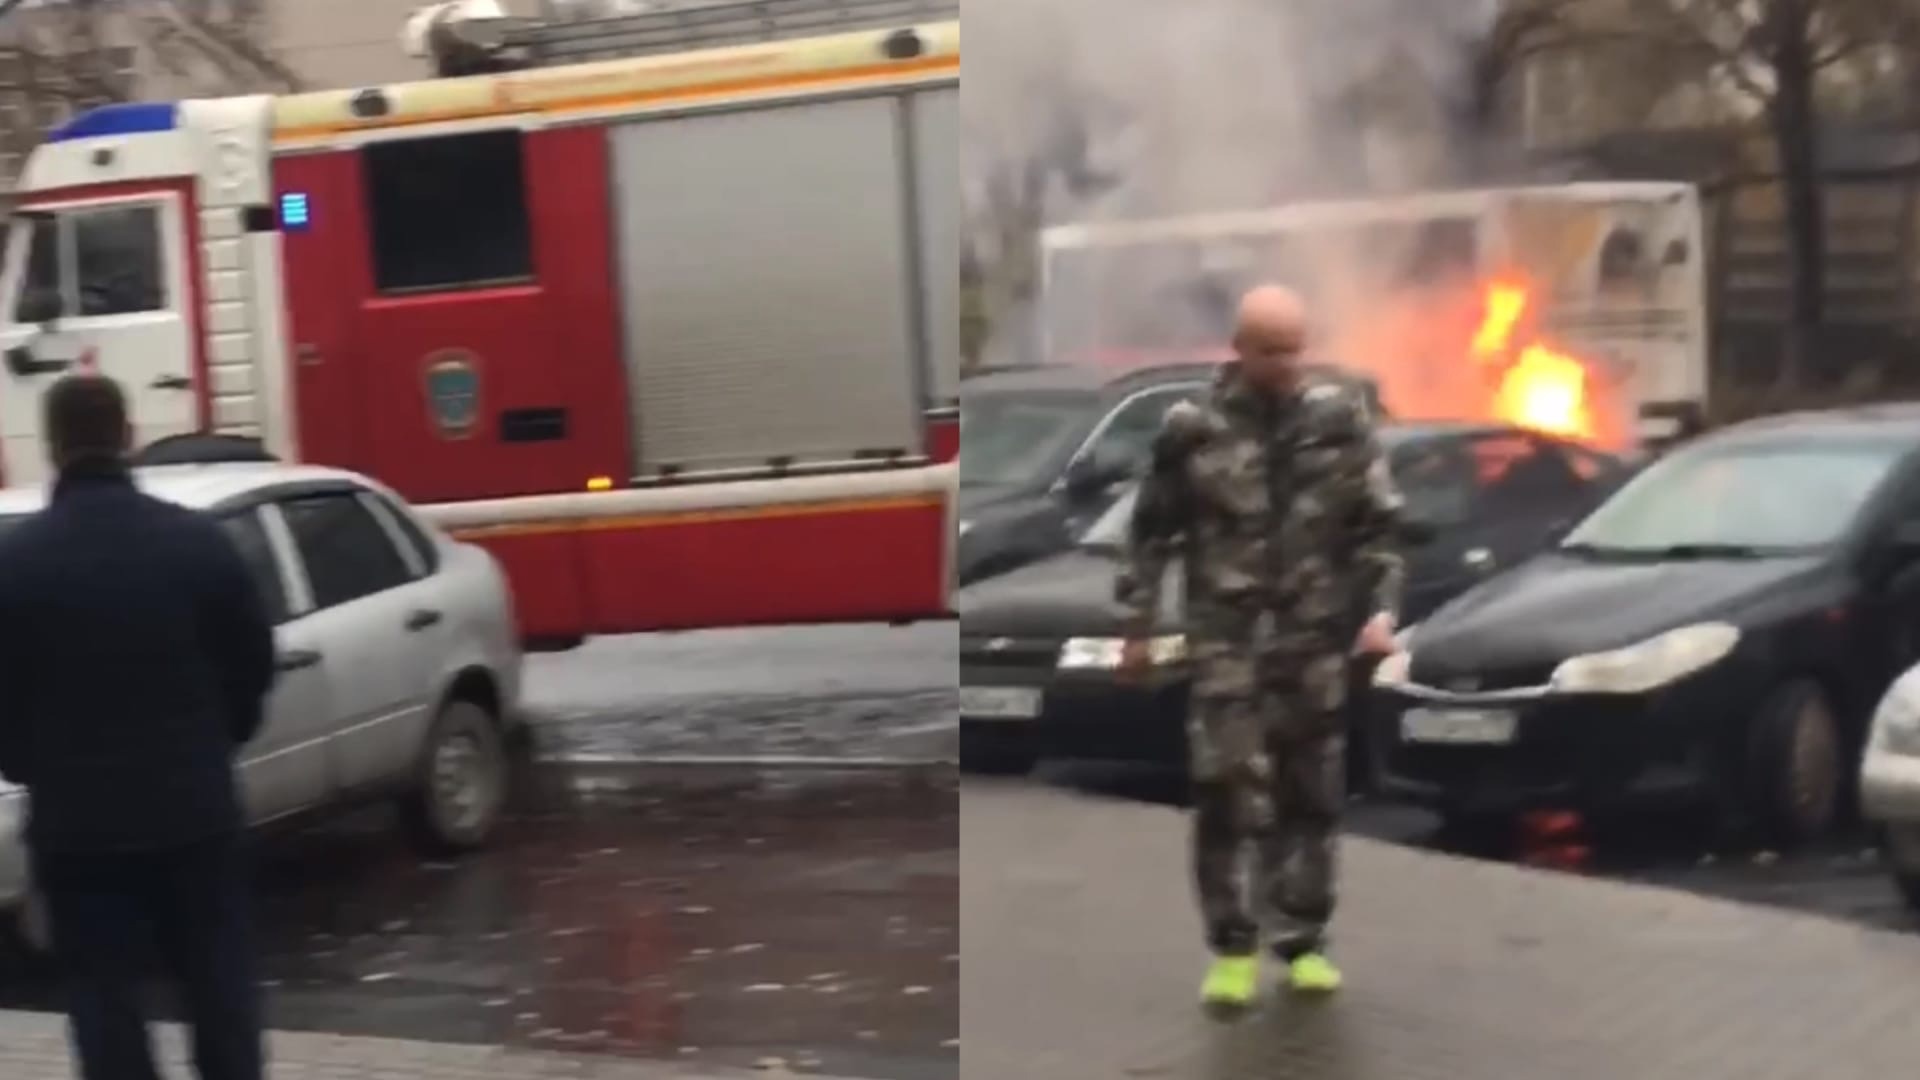 В Кирове на Филейке загорелась иномарка: на место прибыли пожарные расчеты 